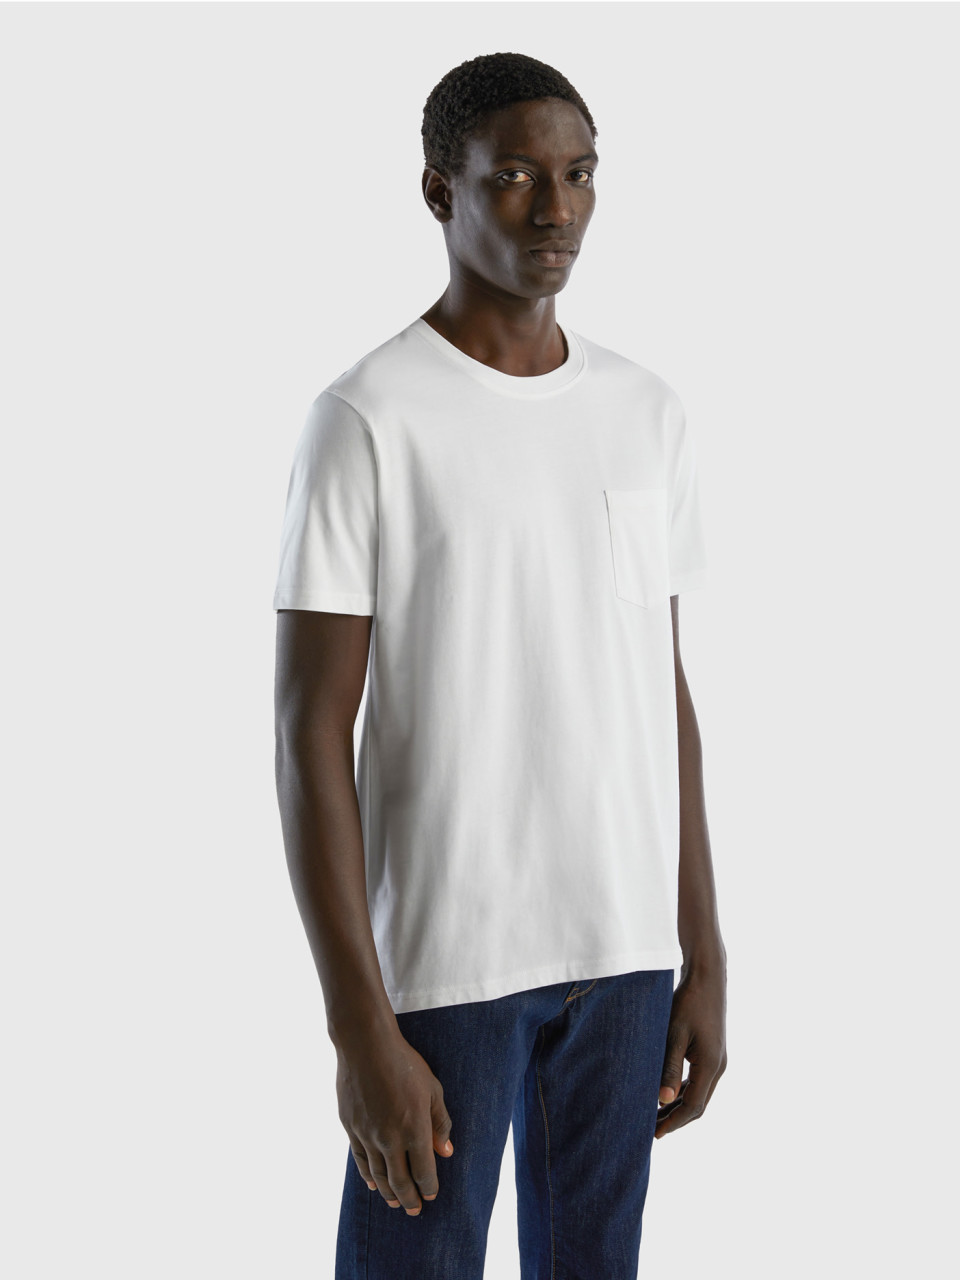 Benetton, 100% Cotton T-shirt With Pocket, White, Men